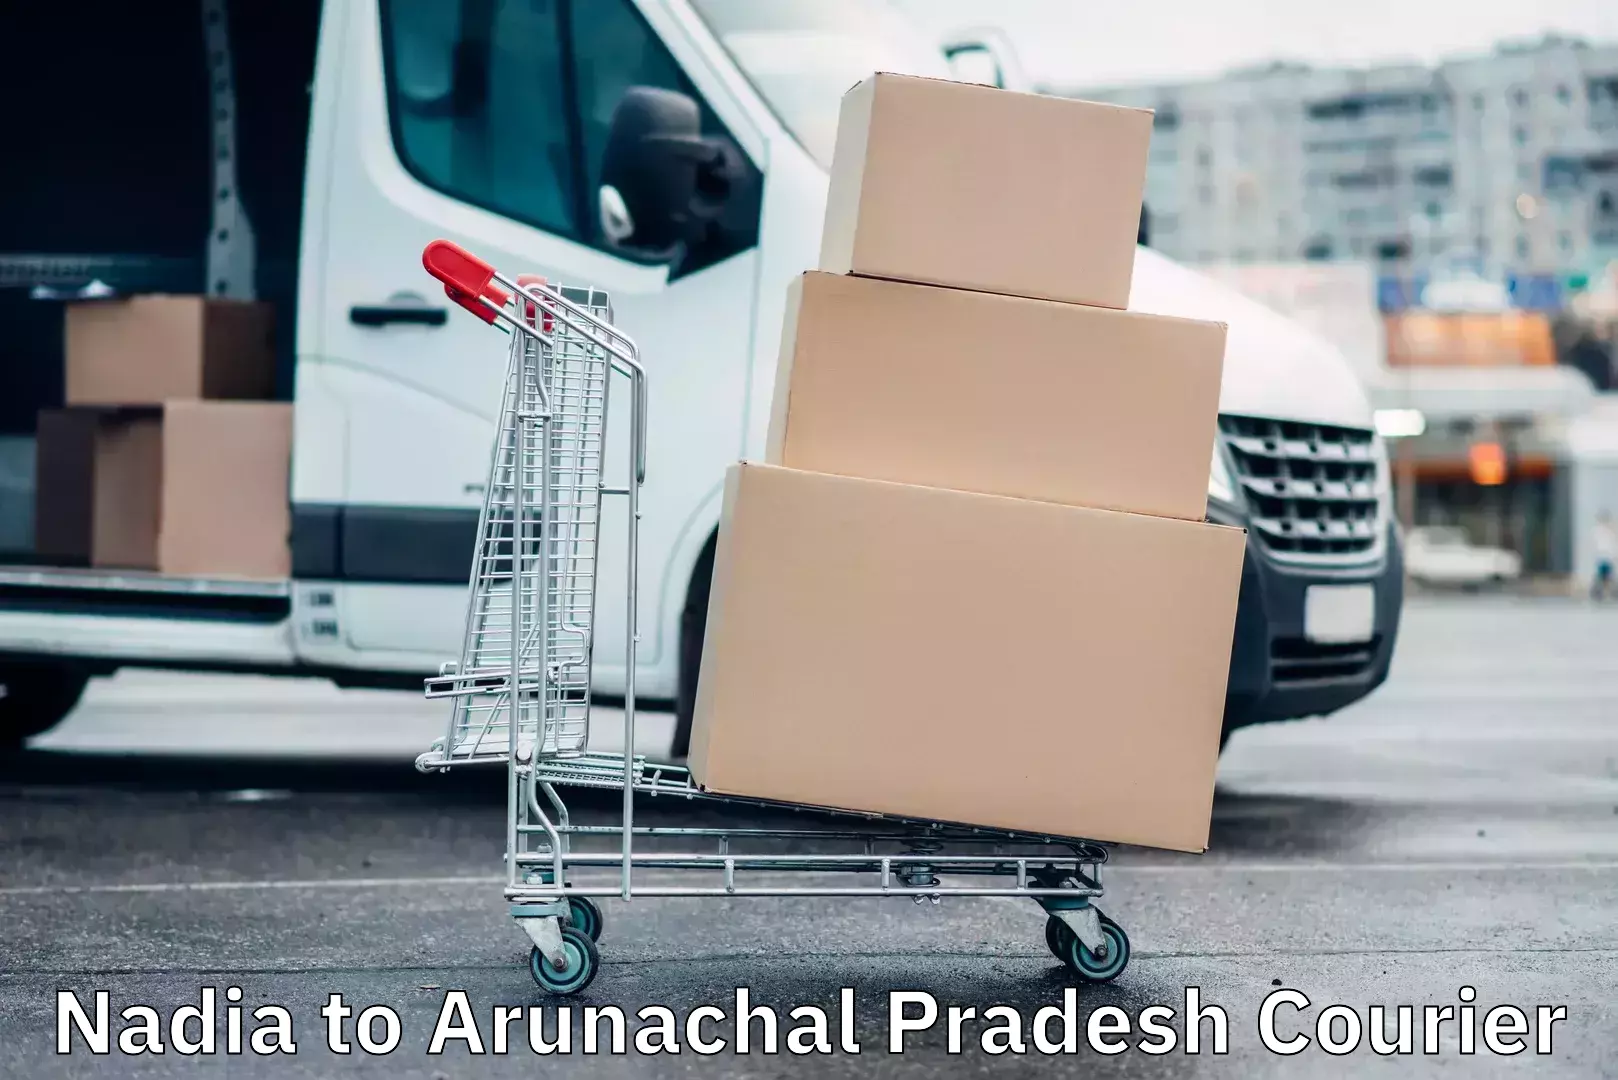 Cargo delivery service Nadia to Arunachal Pradesh